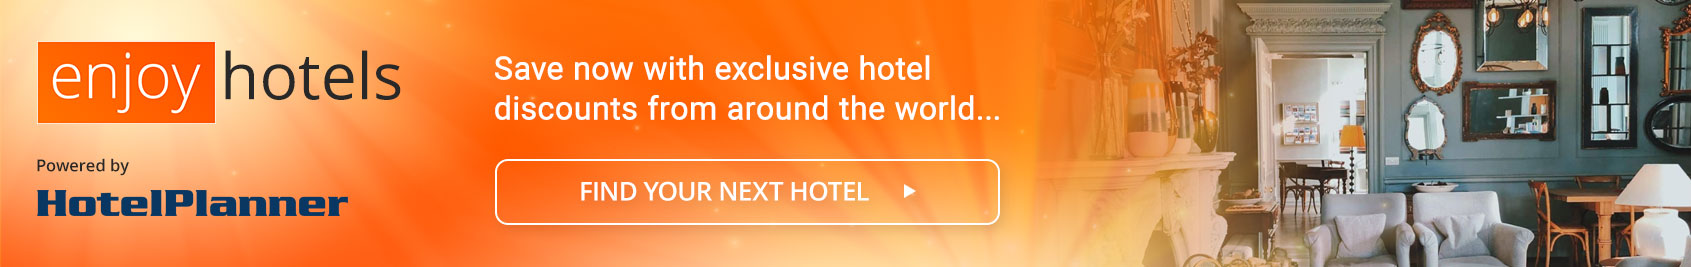 Exclusive Hotel Deals with HotelPlanner